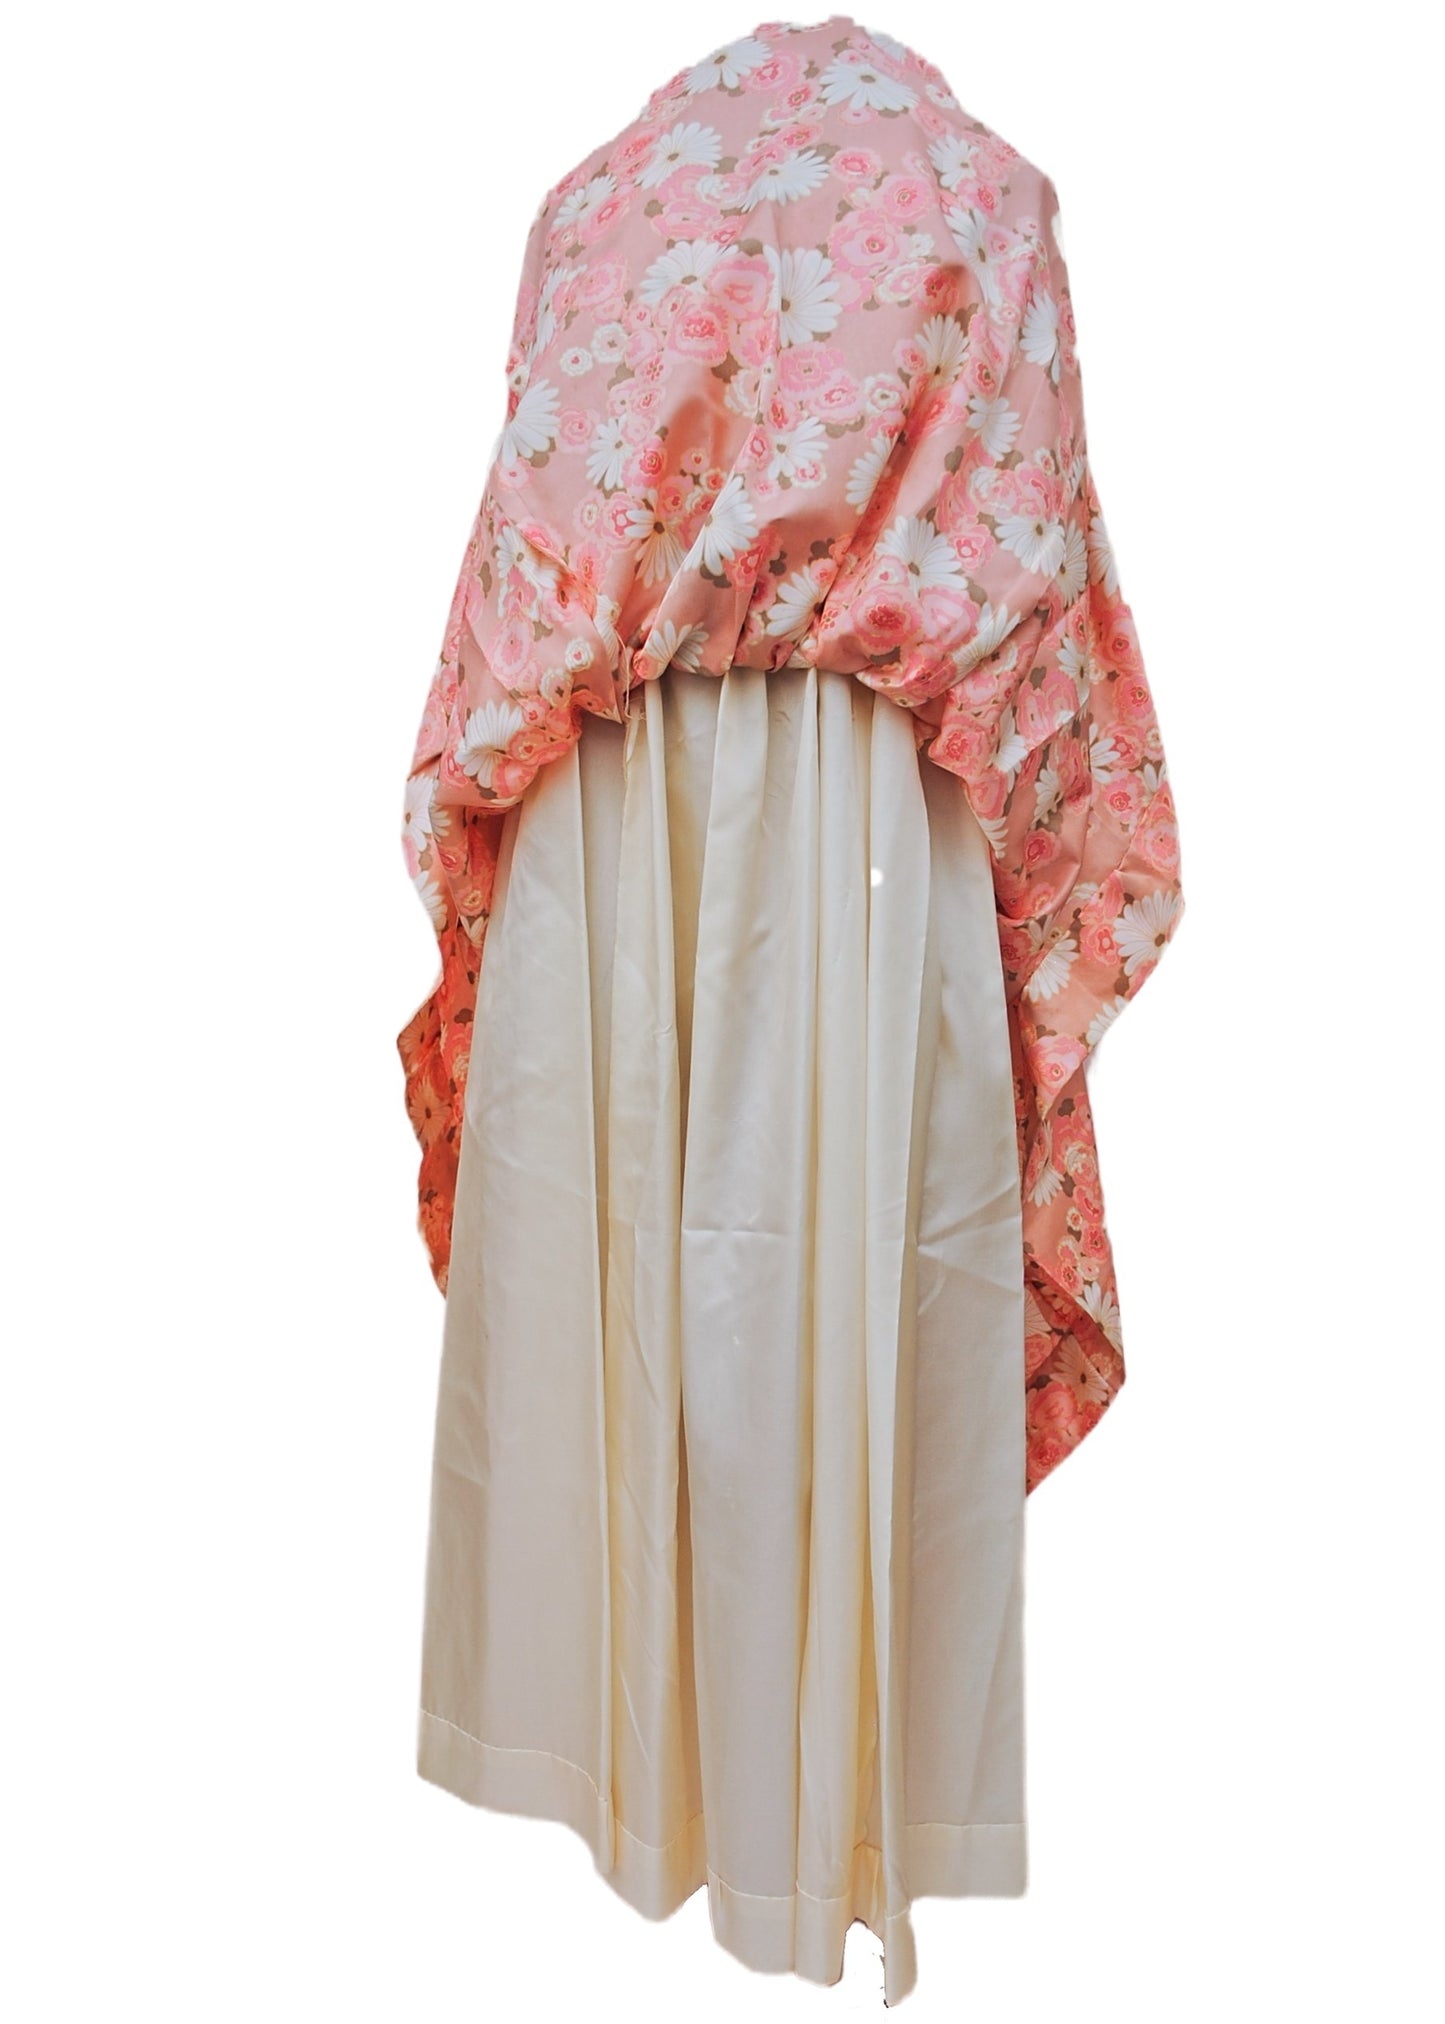 Vintage 60s Pink Floral Empire Line Maxi Gown • Bridgerton Regency Style